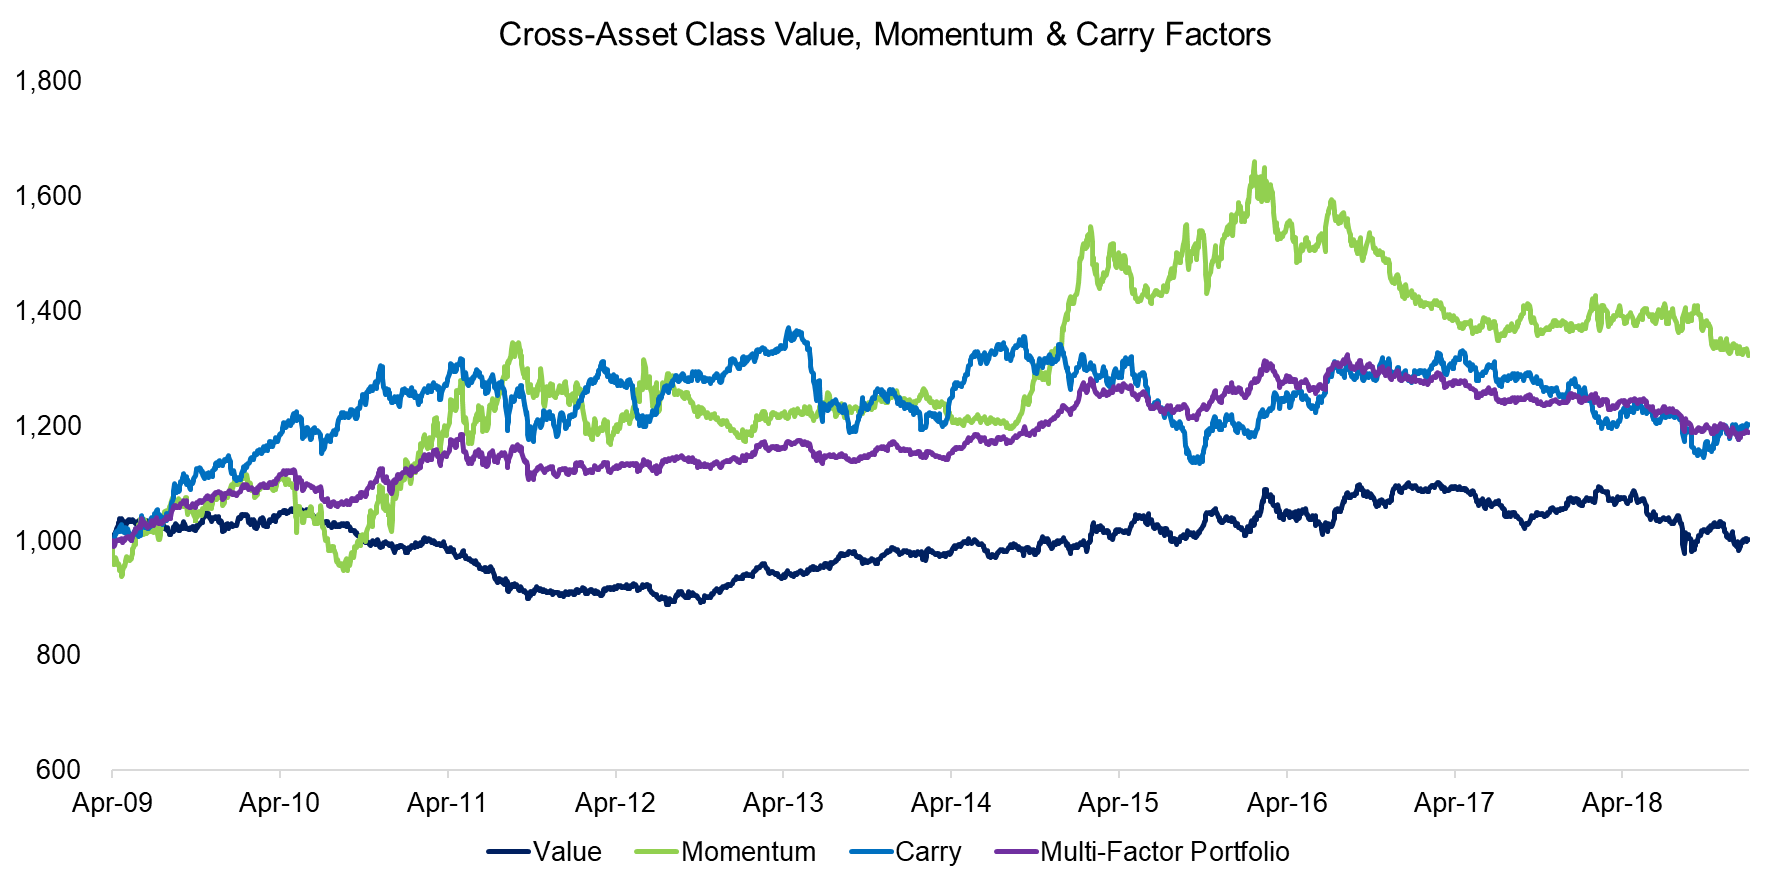 Cross-Asset Class Value, Momentum & Carry Factors